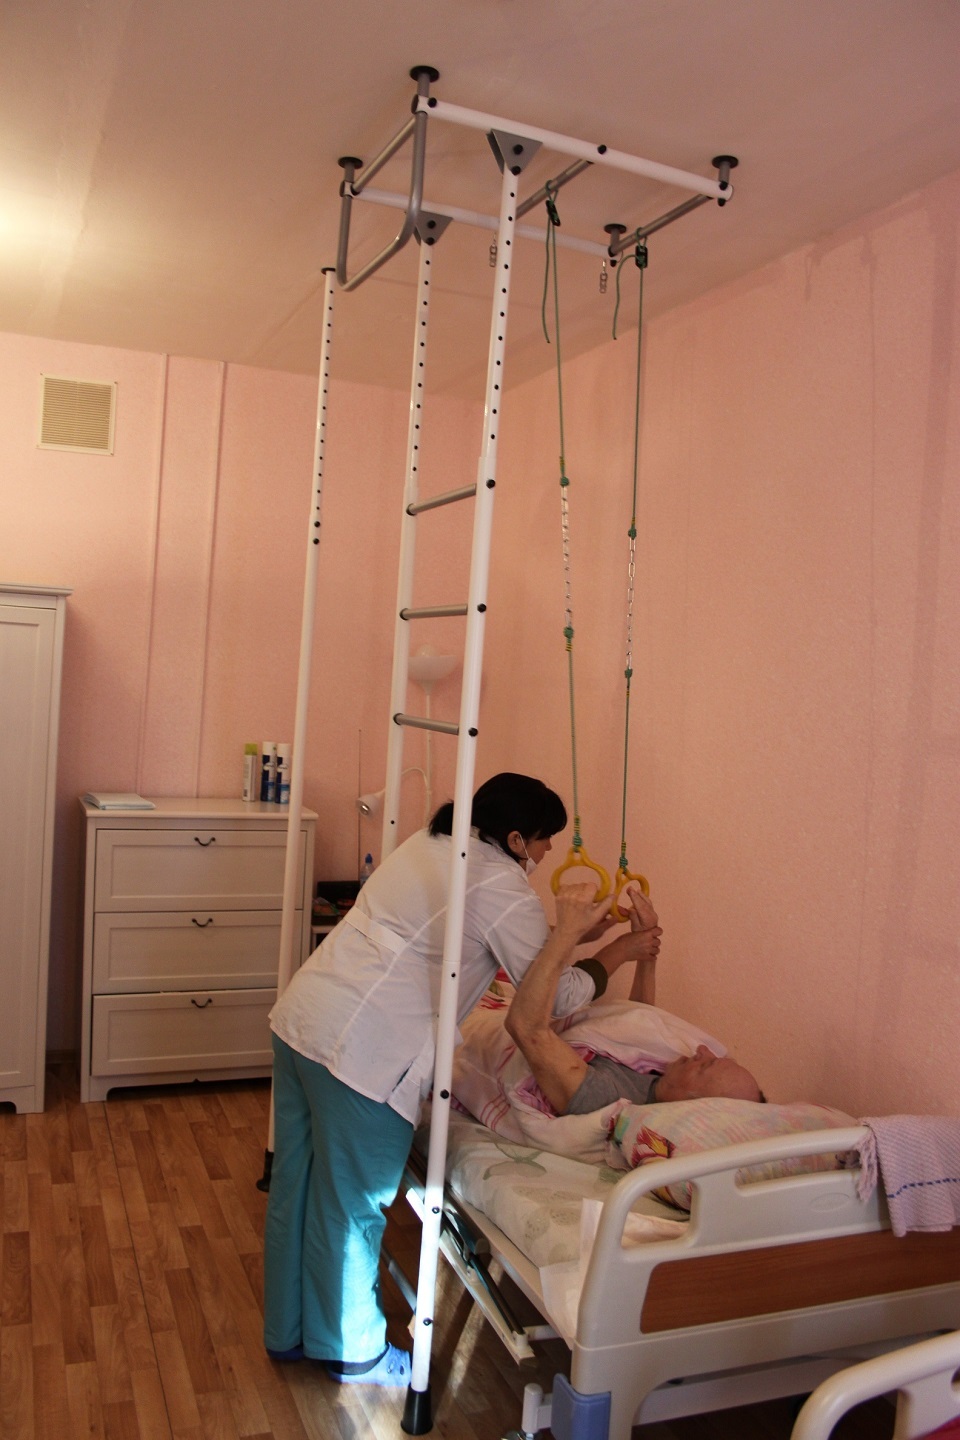 Реабилитация лежачих больных voronezh pansionat ru. Приспособления для лежачих больных. Тренажеры для лежачих больных. Приспособление для поднятия лежачих больных. Приспособление для подъема лежачих больных с кровати.